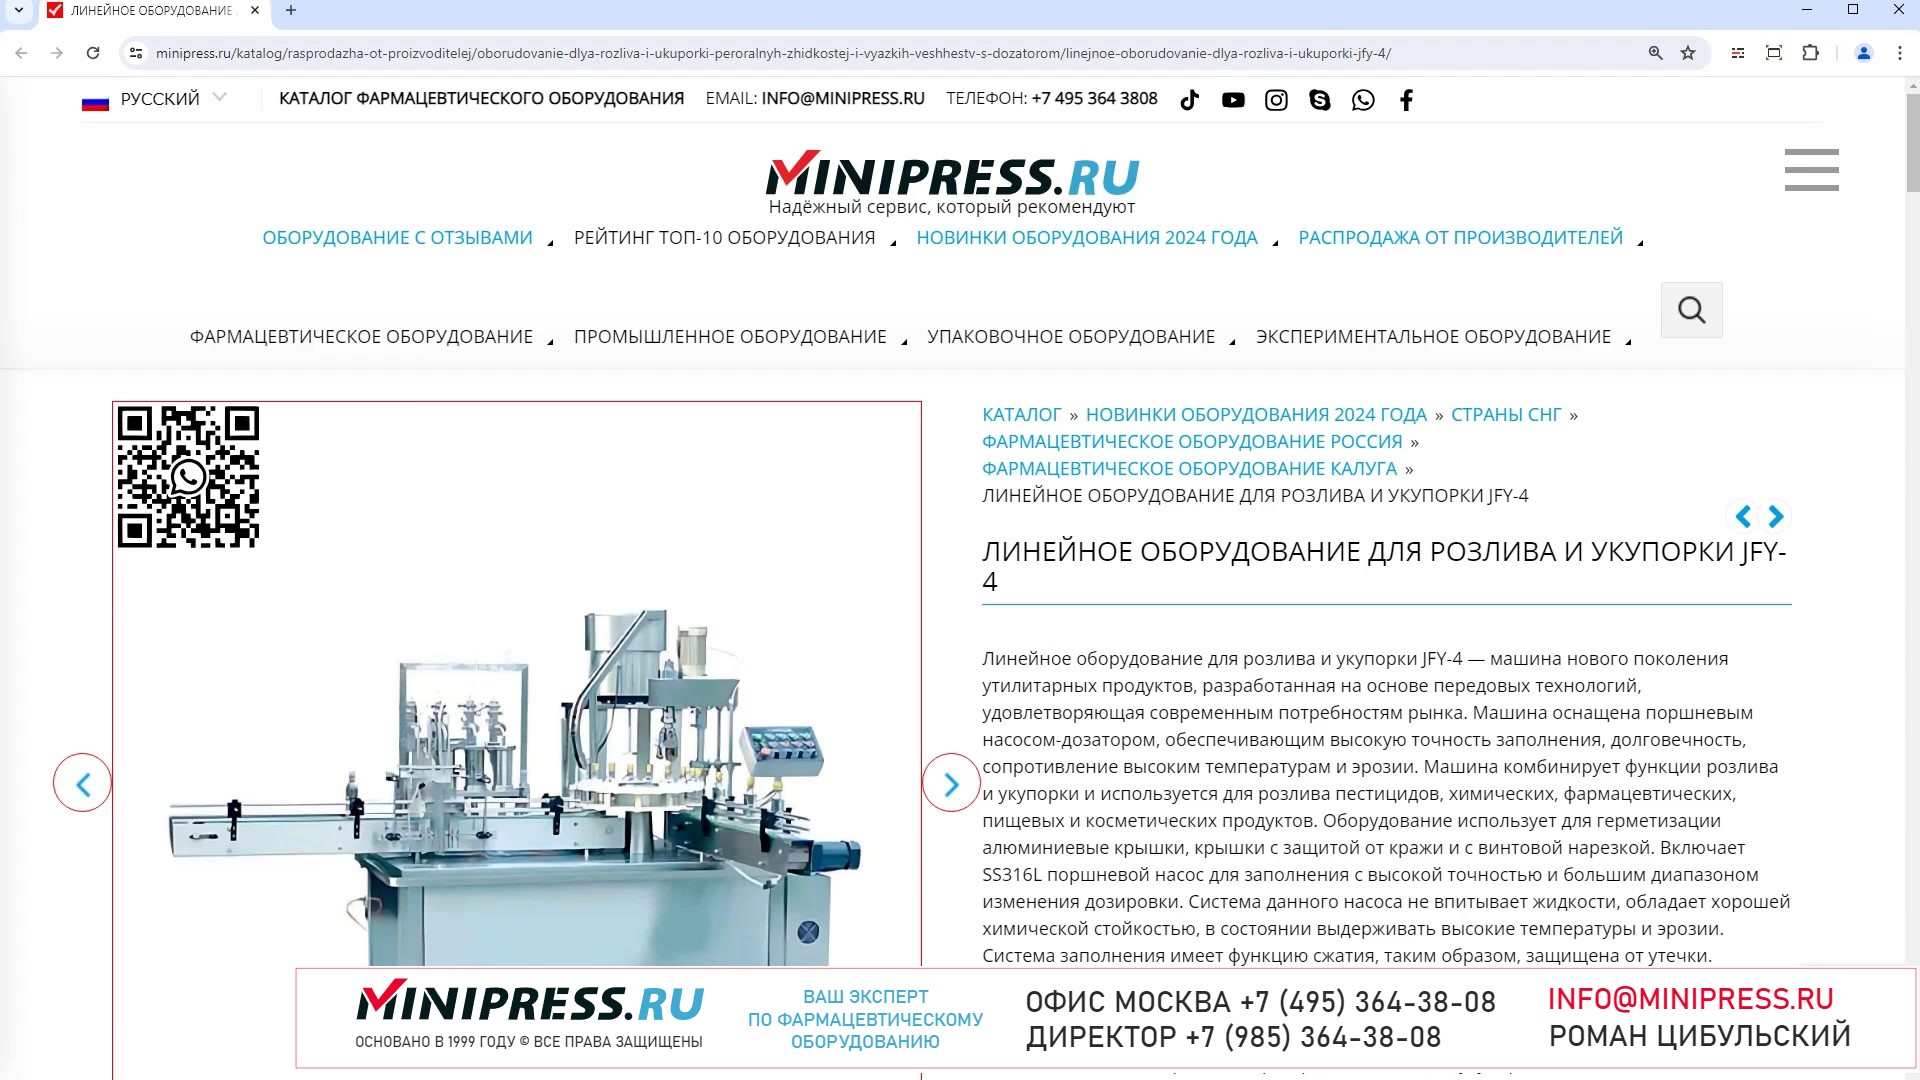 Minipress.ru Линейное оборудование для розлива и укупорки JFY-4